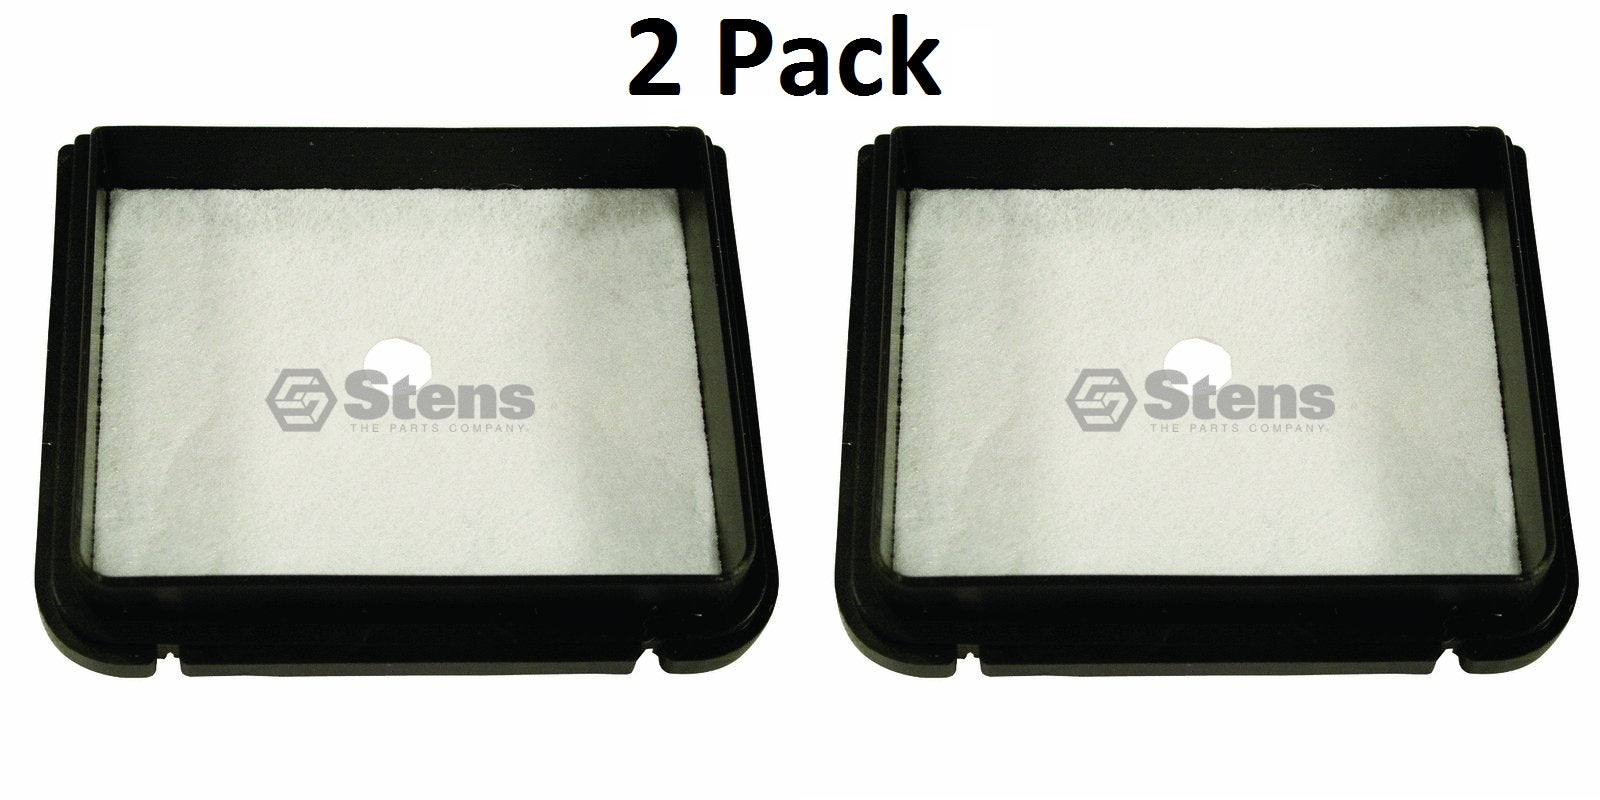 2 Pack Stens 100-325 Air Filter Fits Shindaiwa 60023-98031 T231 T231B T231X